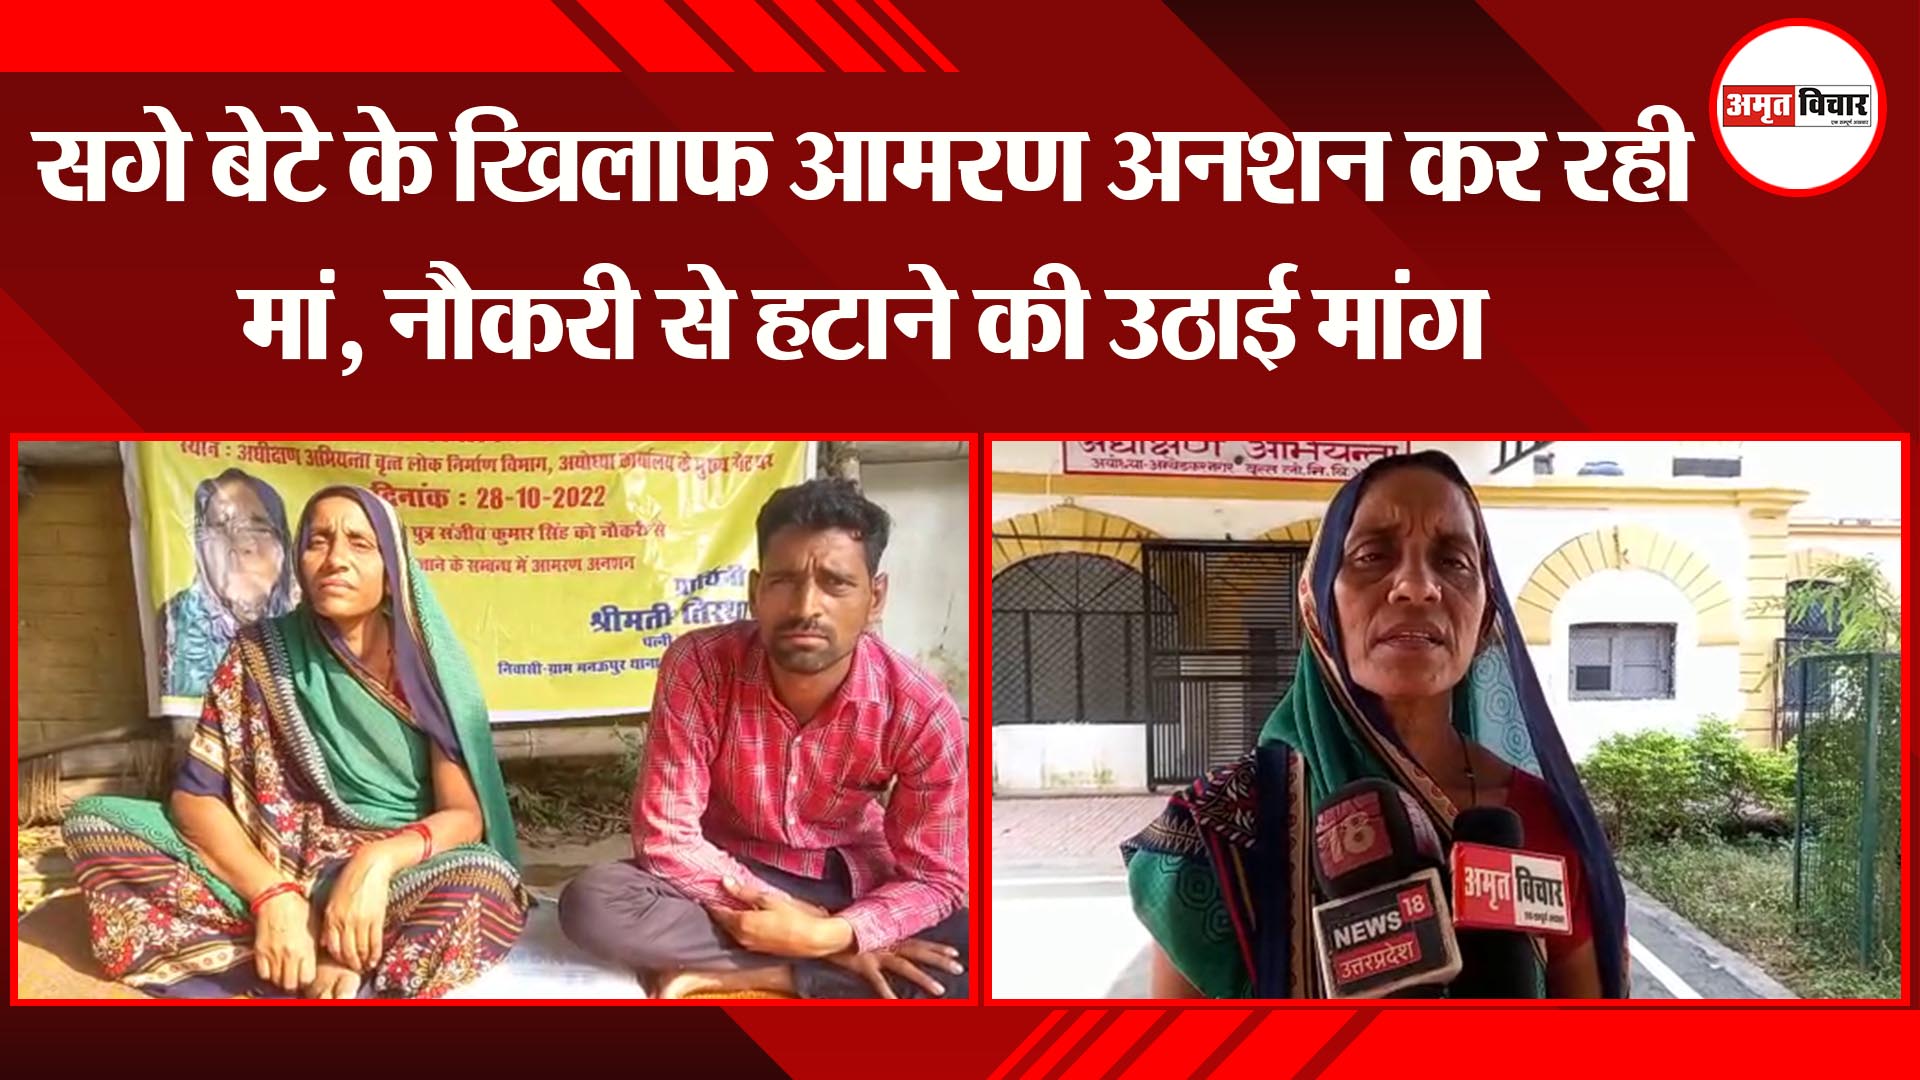 अयोध्या: सगे बेटे के खिलाफ आमरण अनशन कर रही मां, नौकरी से हटाने की उठाई मांग